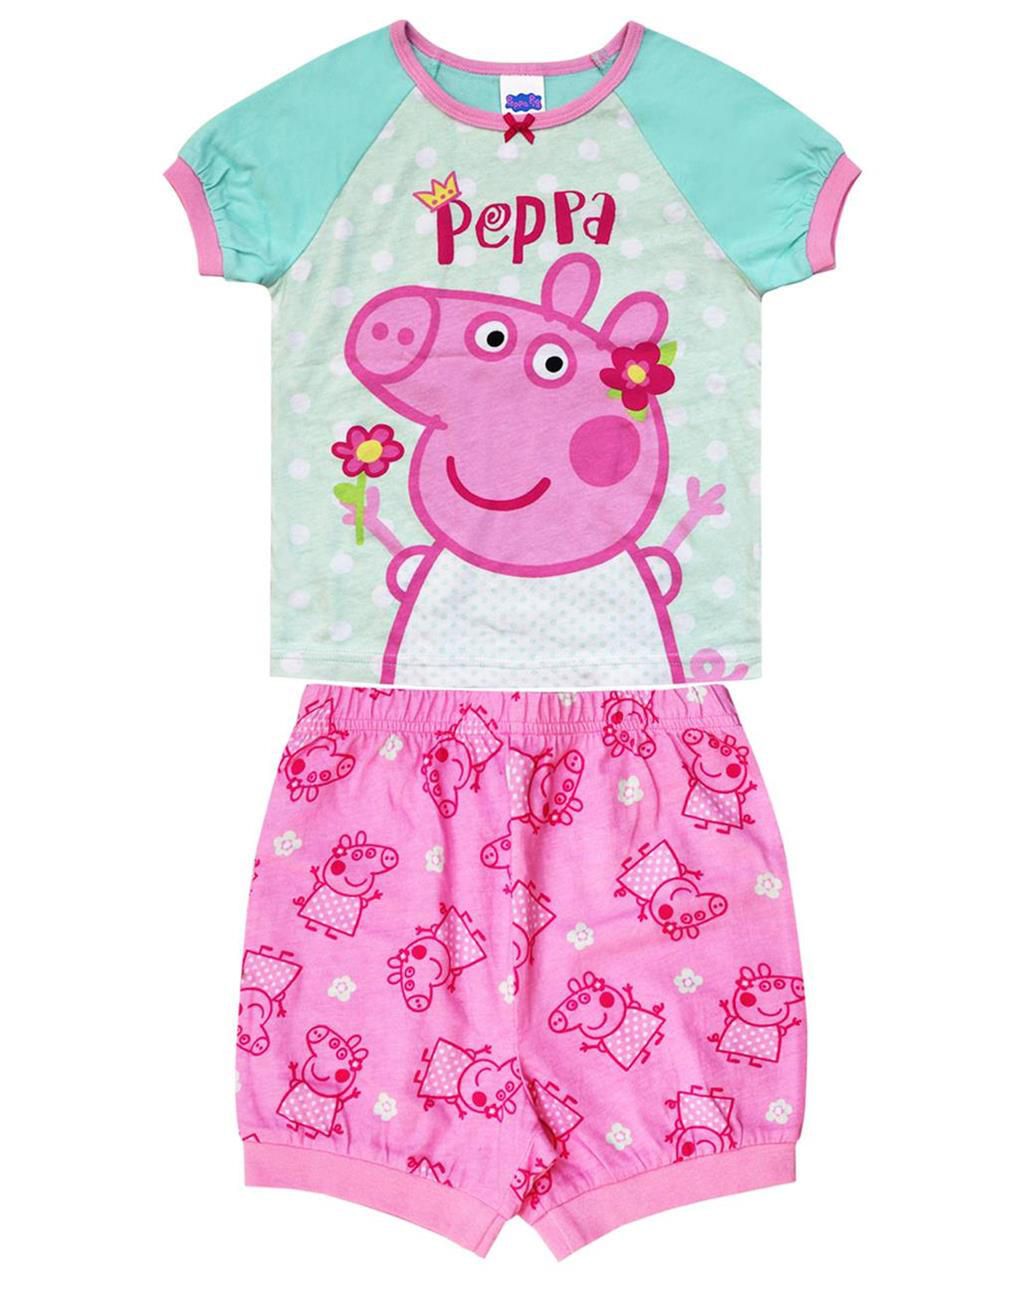 Peppa Pig two piece pyjama set for girls | Walmart Canada